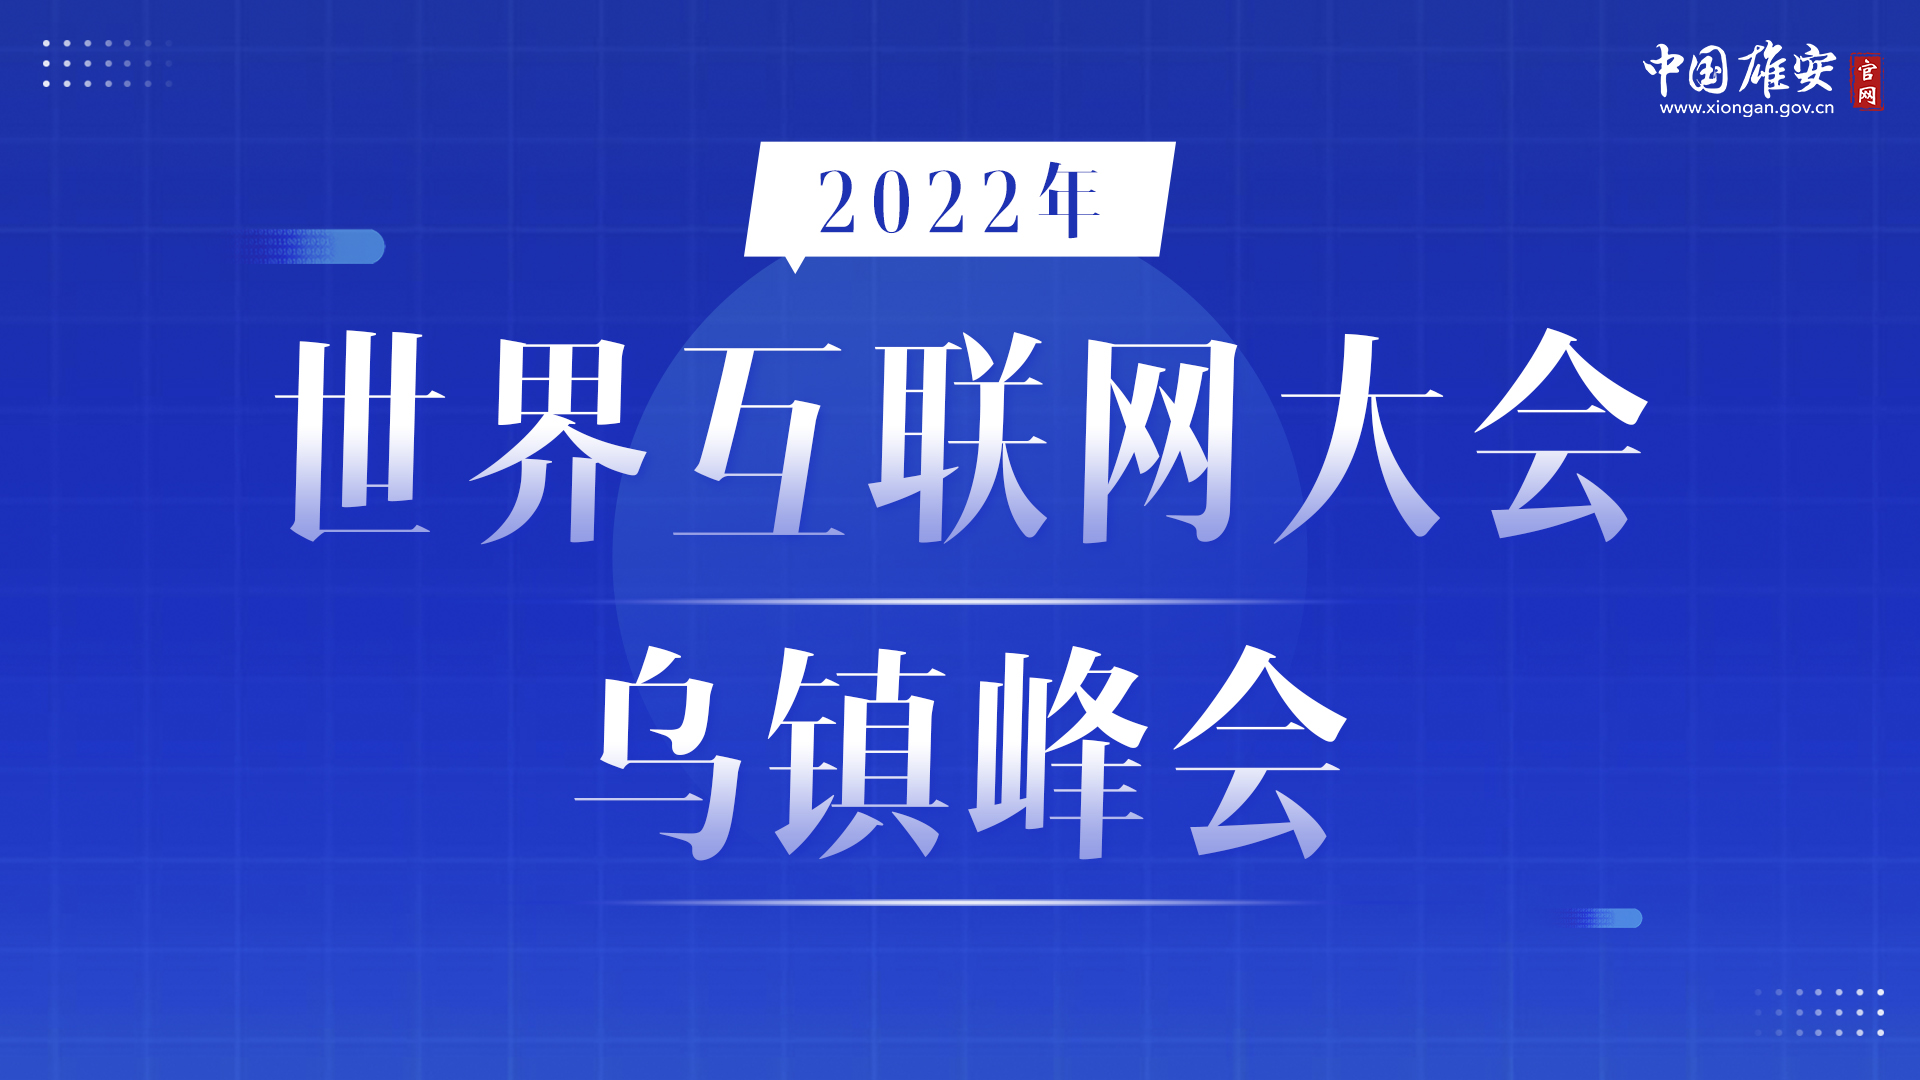 2022年互联网大会乌镇峰会